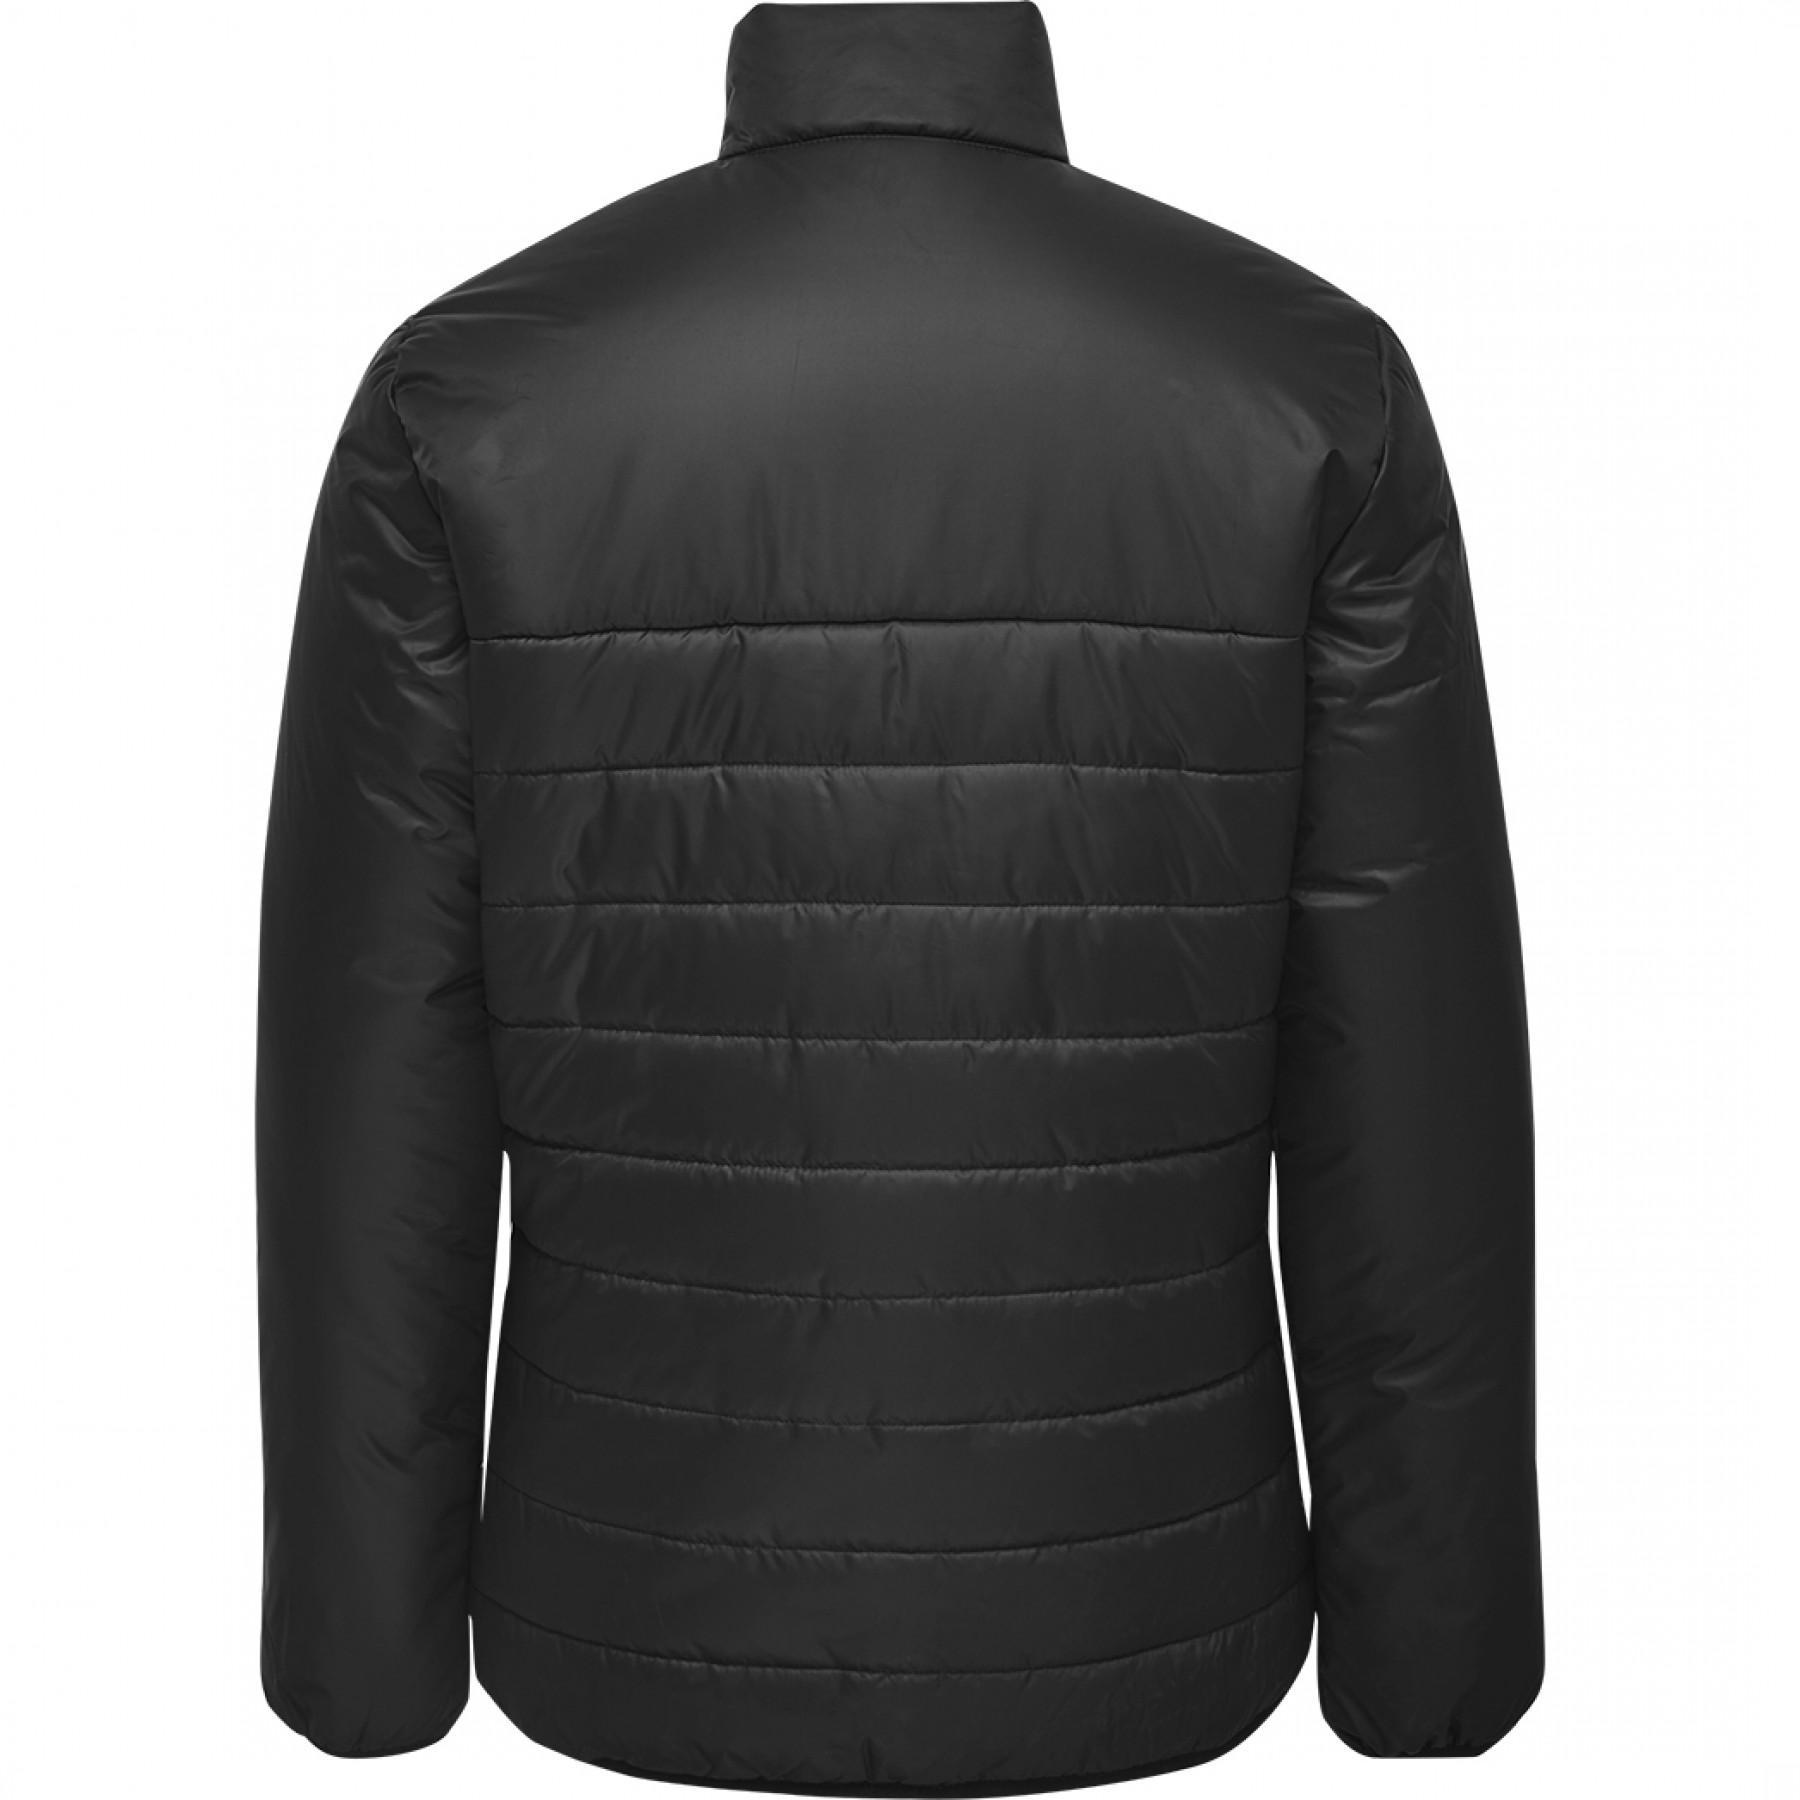 Jacket Hummel sander black